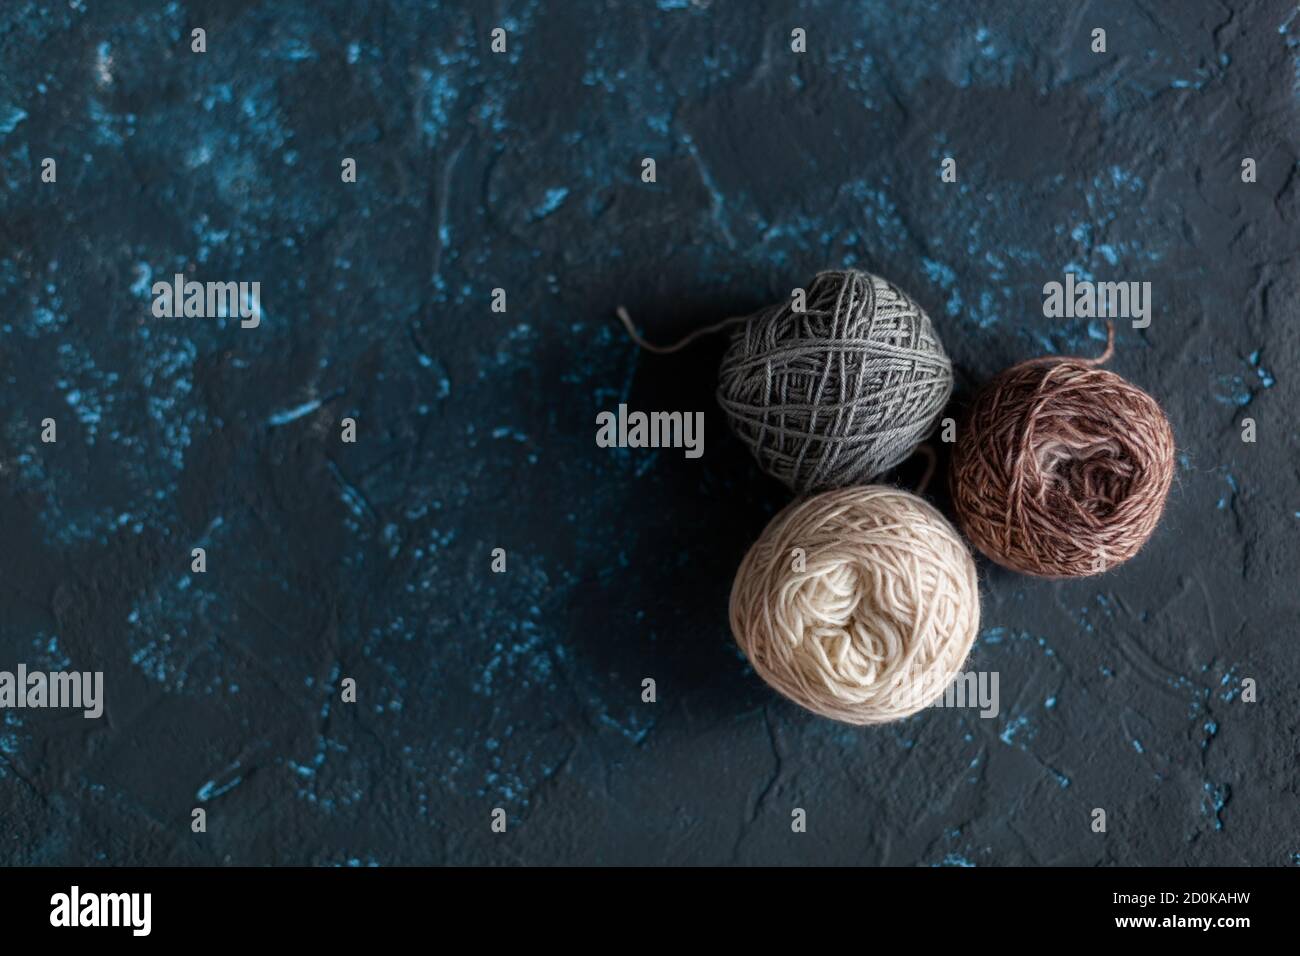 Trois boules de couleur beige brun gris pelote de fil de laine pour crochet et tricoter sur le béton de mastic de texture bleu foncé. Mettre à plat l'image avec de l'espace pour le texte. Banque D'Images